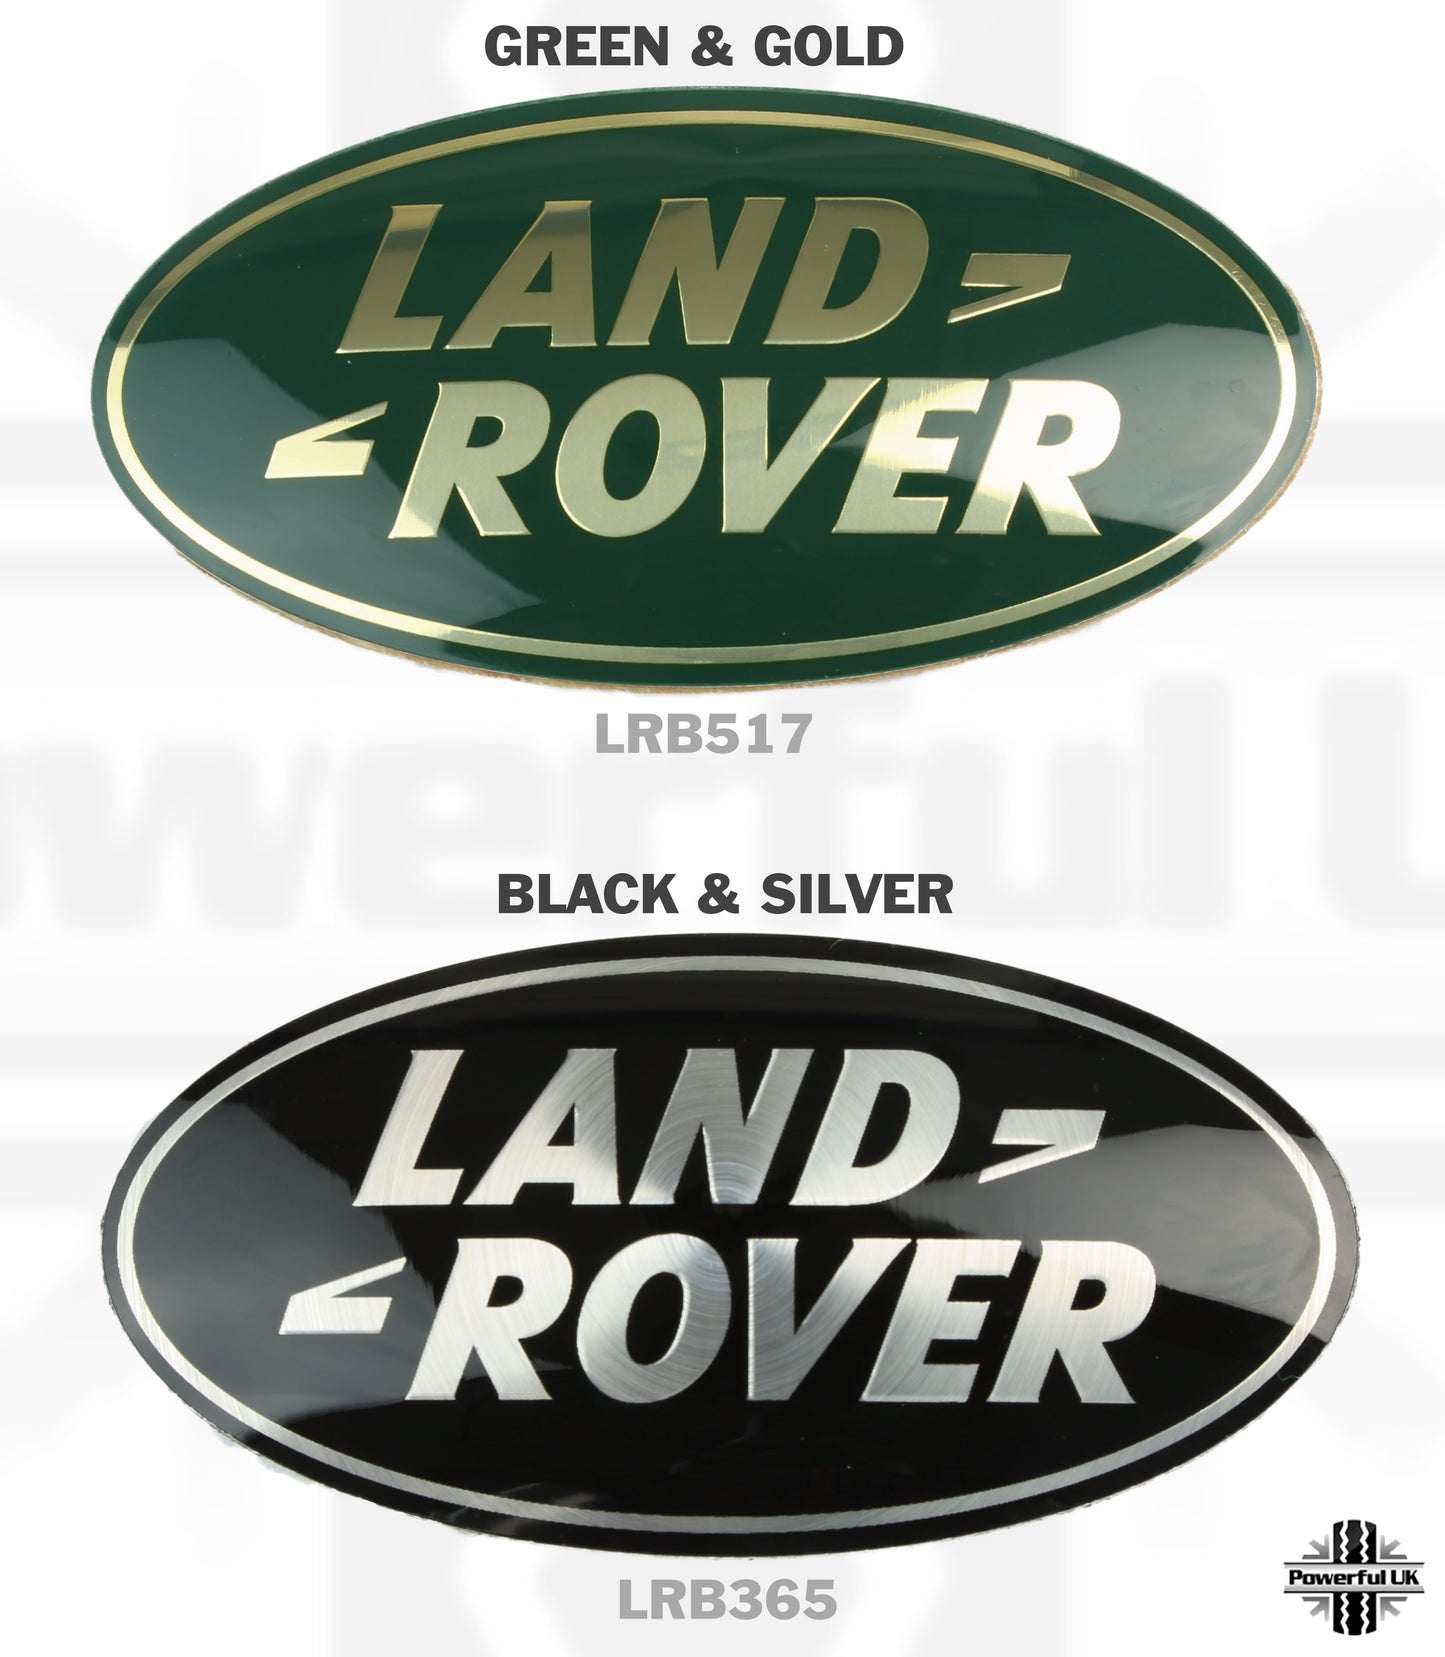 Genuine Front Grille Badge - Green & Gold - for Land Rover Defender